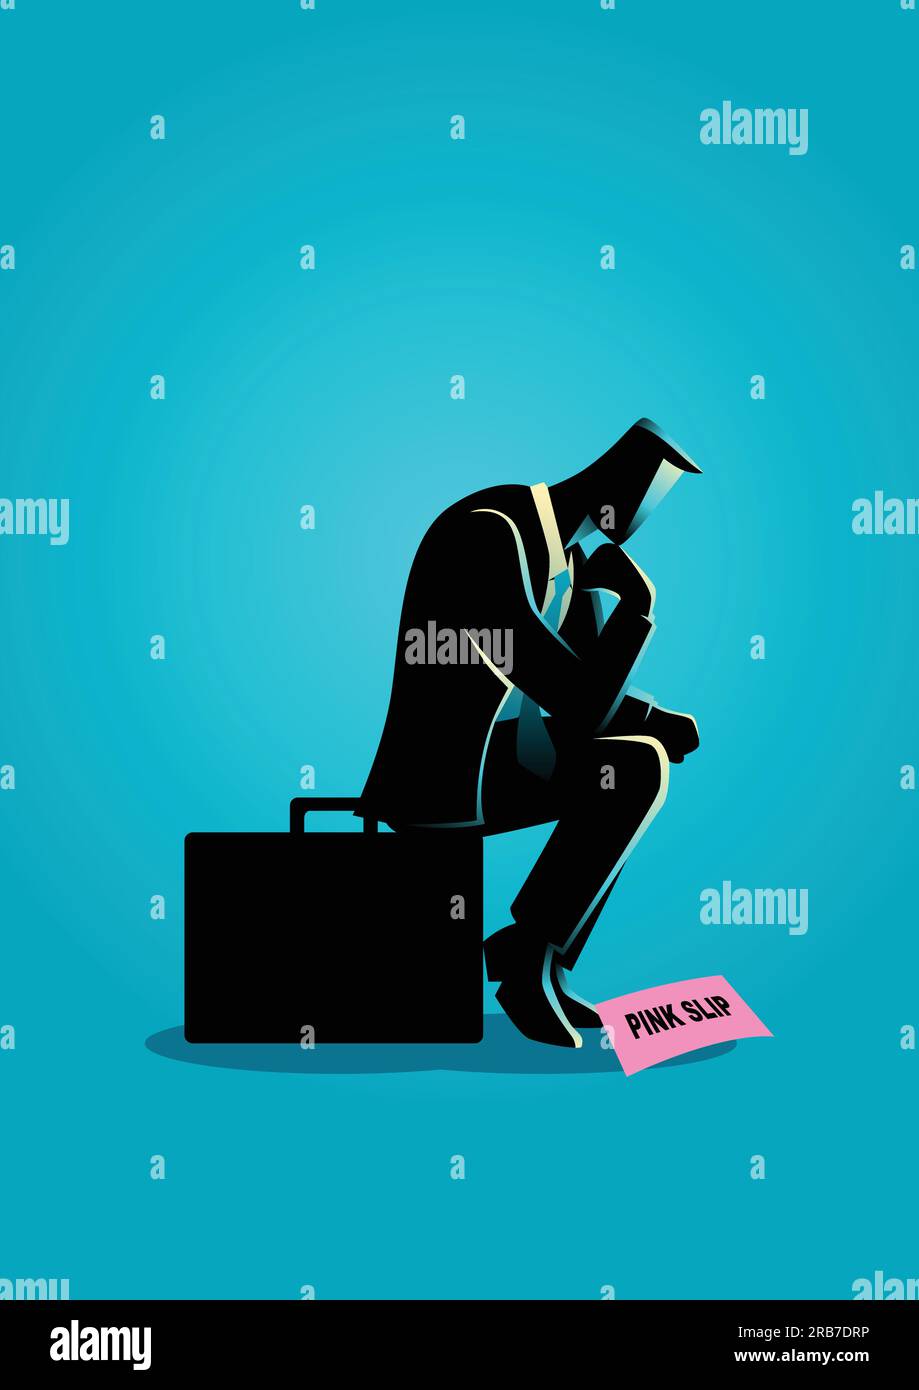 Business concept illustration d'un homme d'affaires assis dans une valise malheureusement parce qu'il a reçu un feuillet rose Illustration de Vecteur